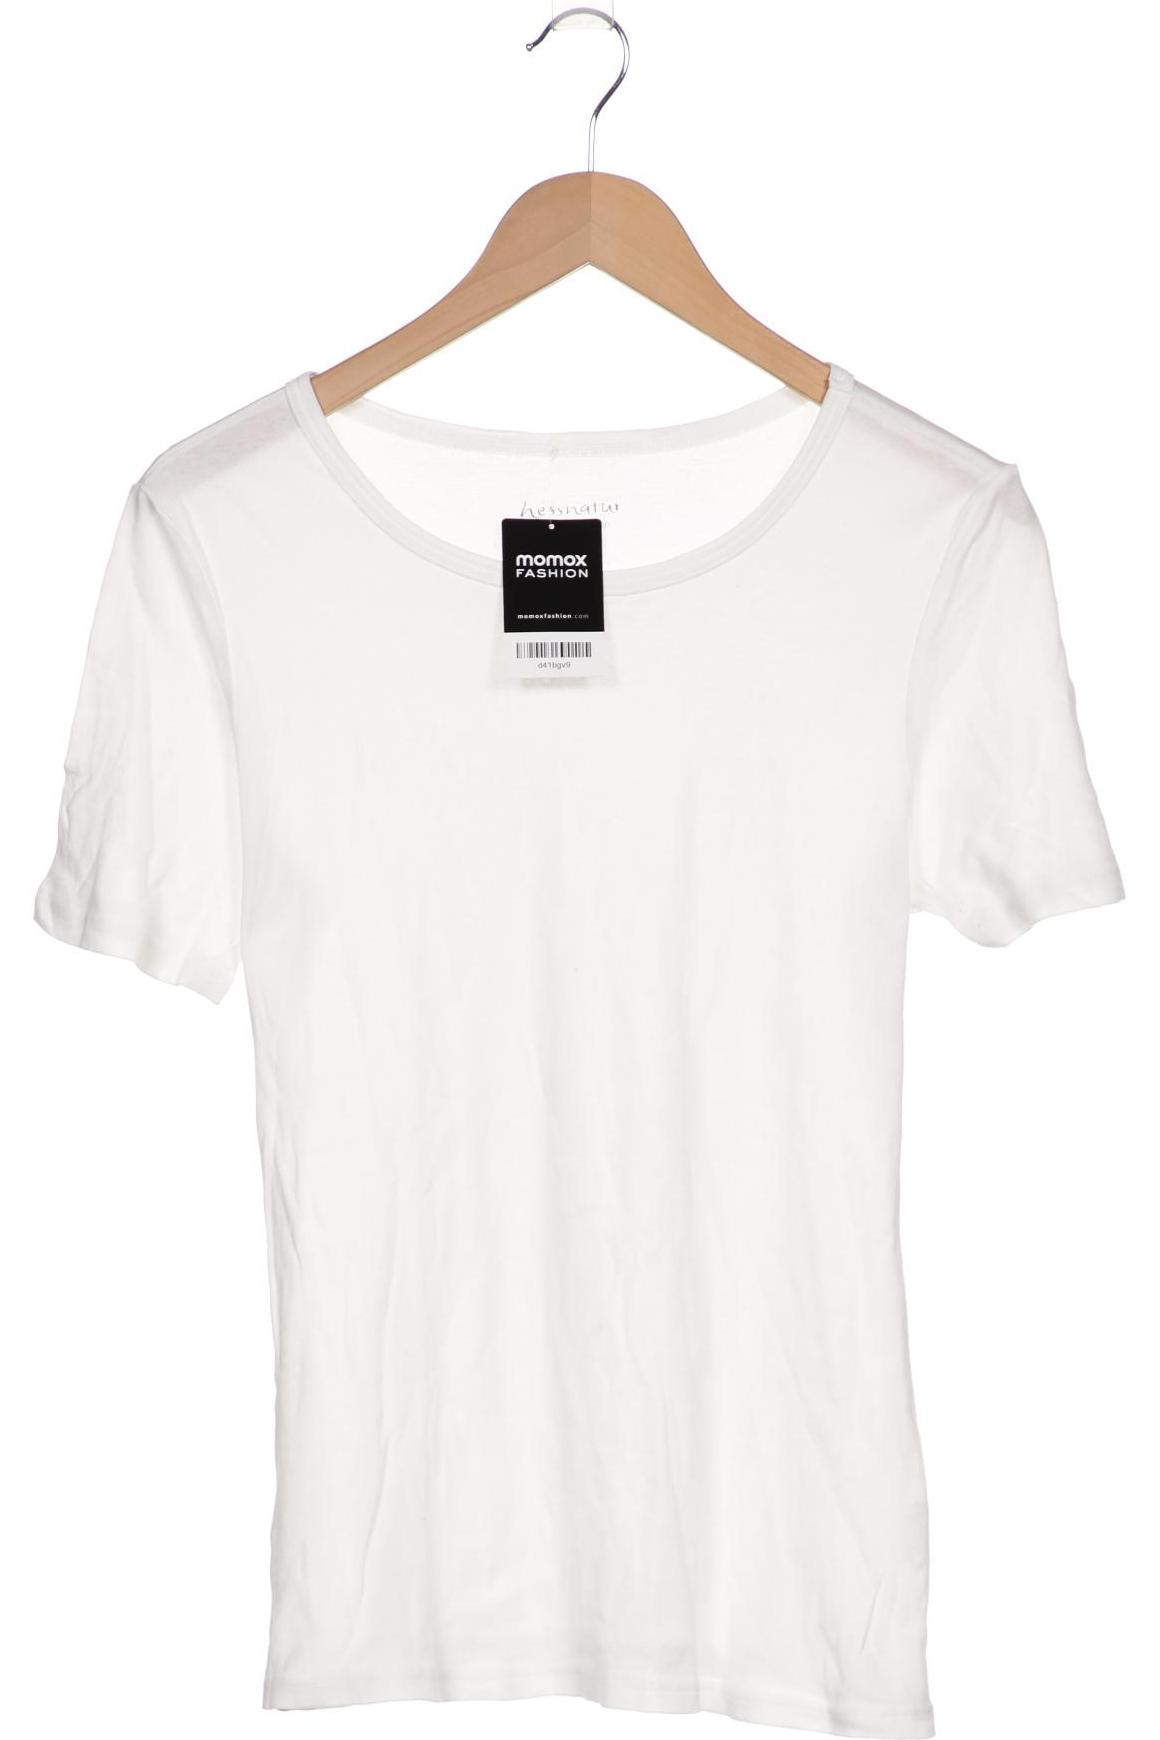 hessnatur Damen T-Shirt, weiß, Gr. 40 von hessnatur